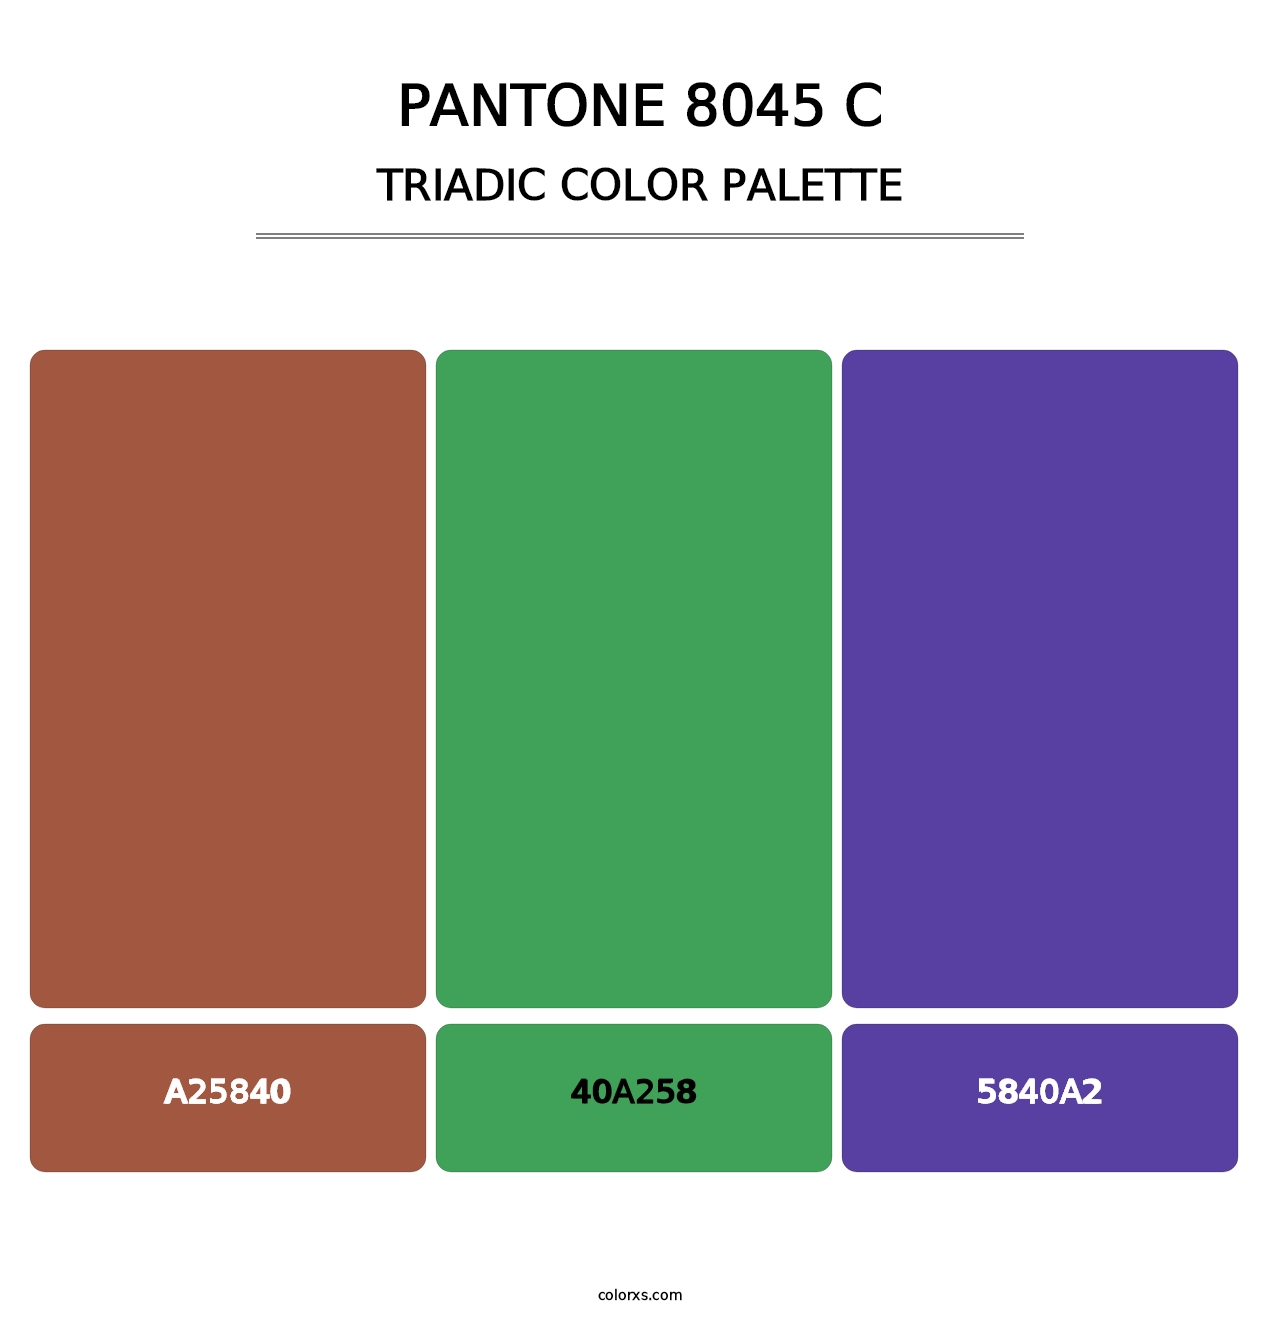 PANTONE 8045 C - Triadic Color Palette